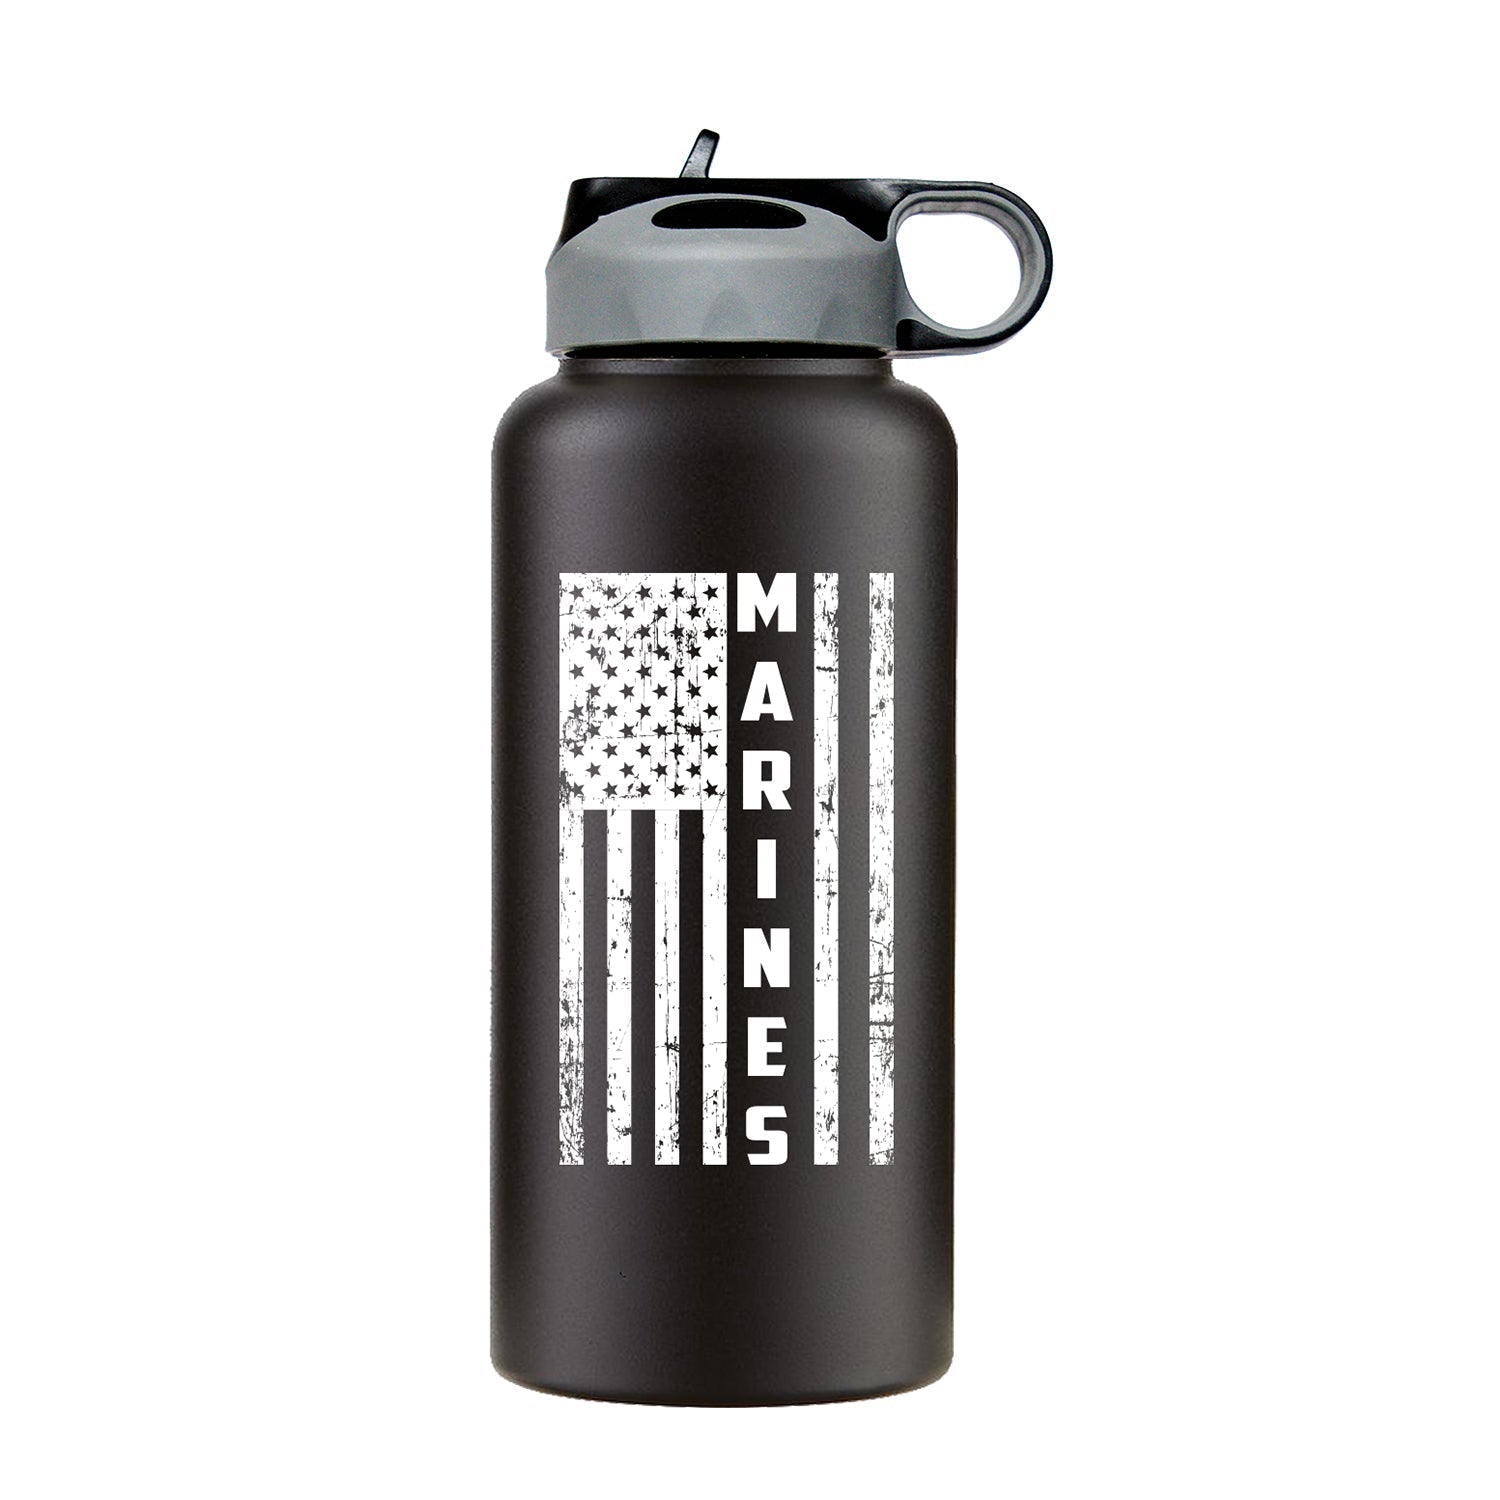 USMC Water Bottle, American Flag Water bottle, 32 oz water bottle, patriotic water bottle, USMC drinkware